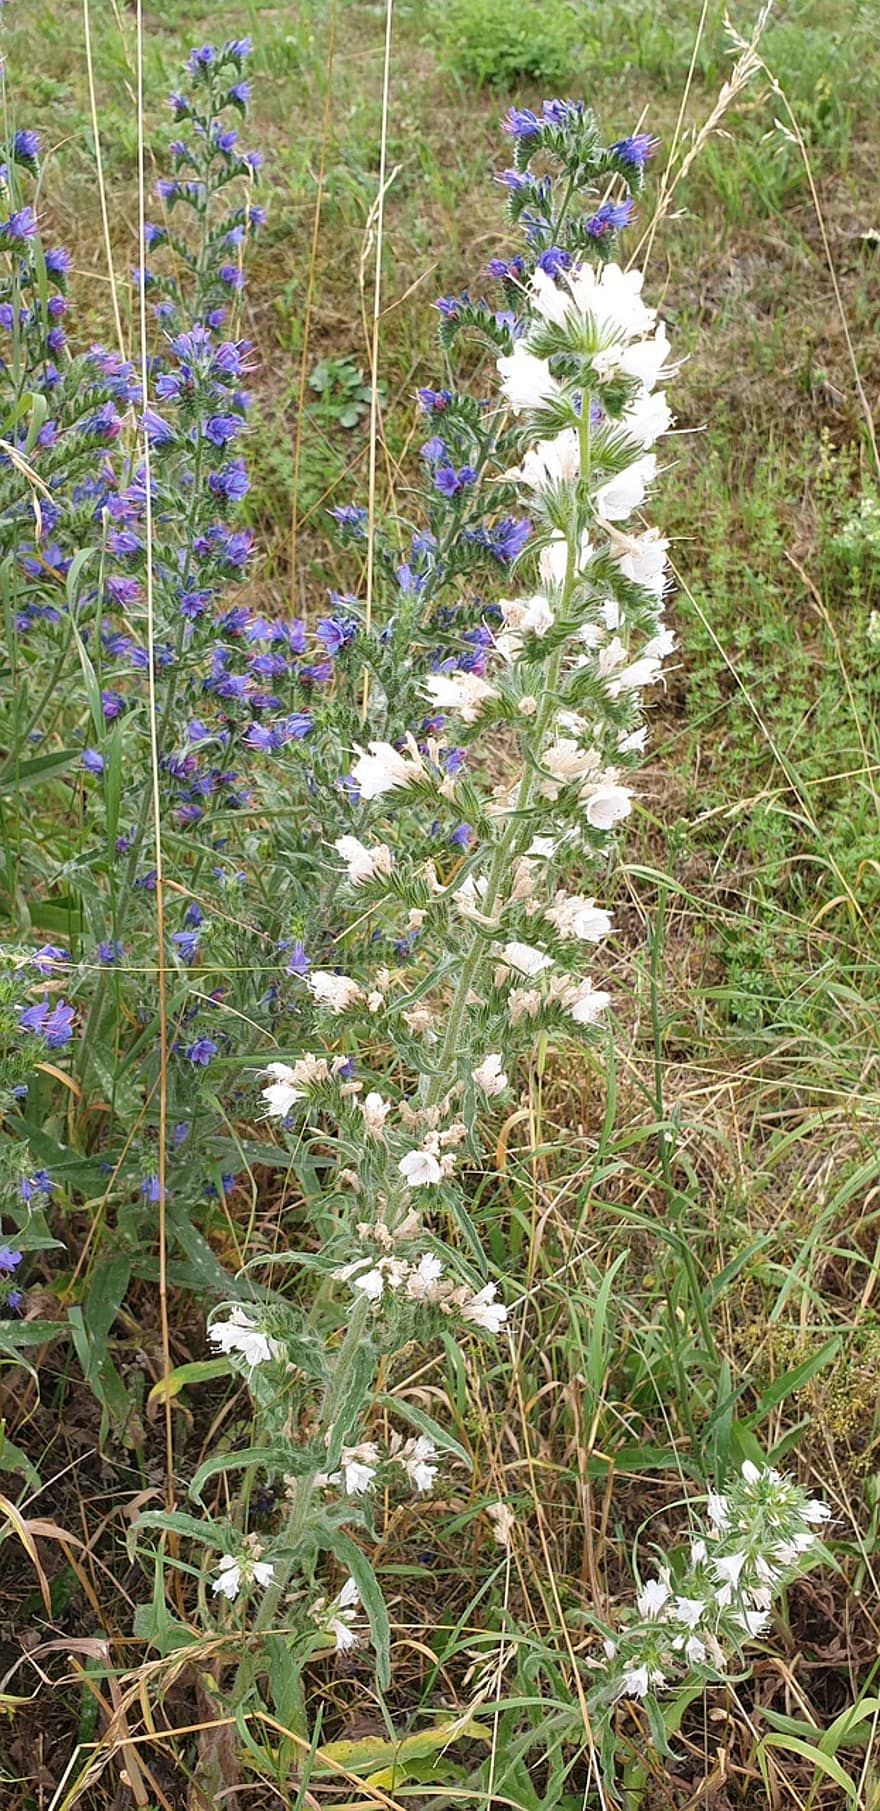 paprastas natternkopf, Baltos gyvatės galva, laukinės gėlės, gėlės, balta, echium vulgare, gyvatės galva, mėlyna, mėlyna natternkopf, echiumas, raublattgewächs